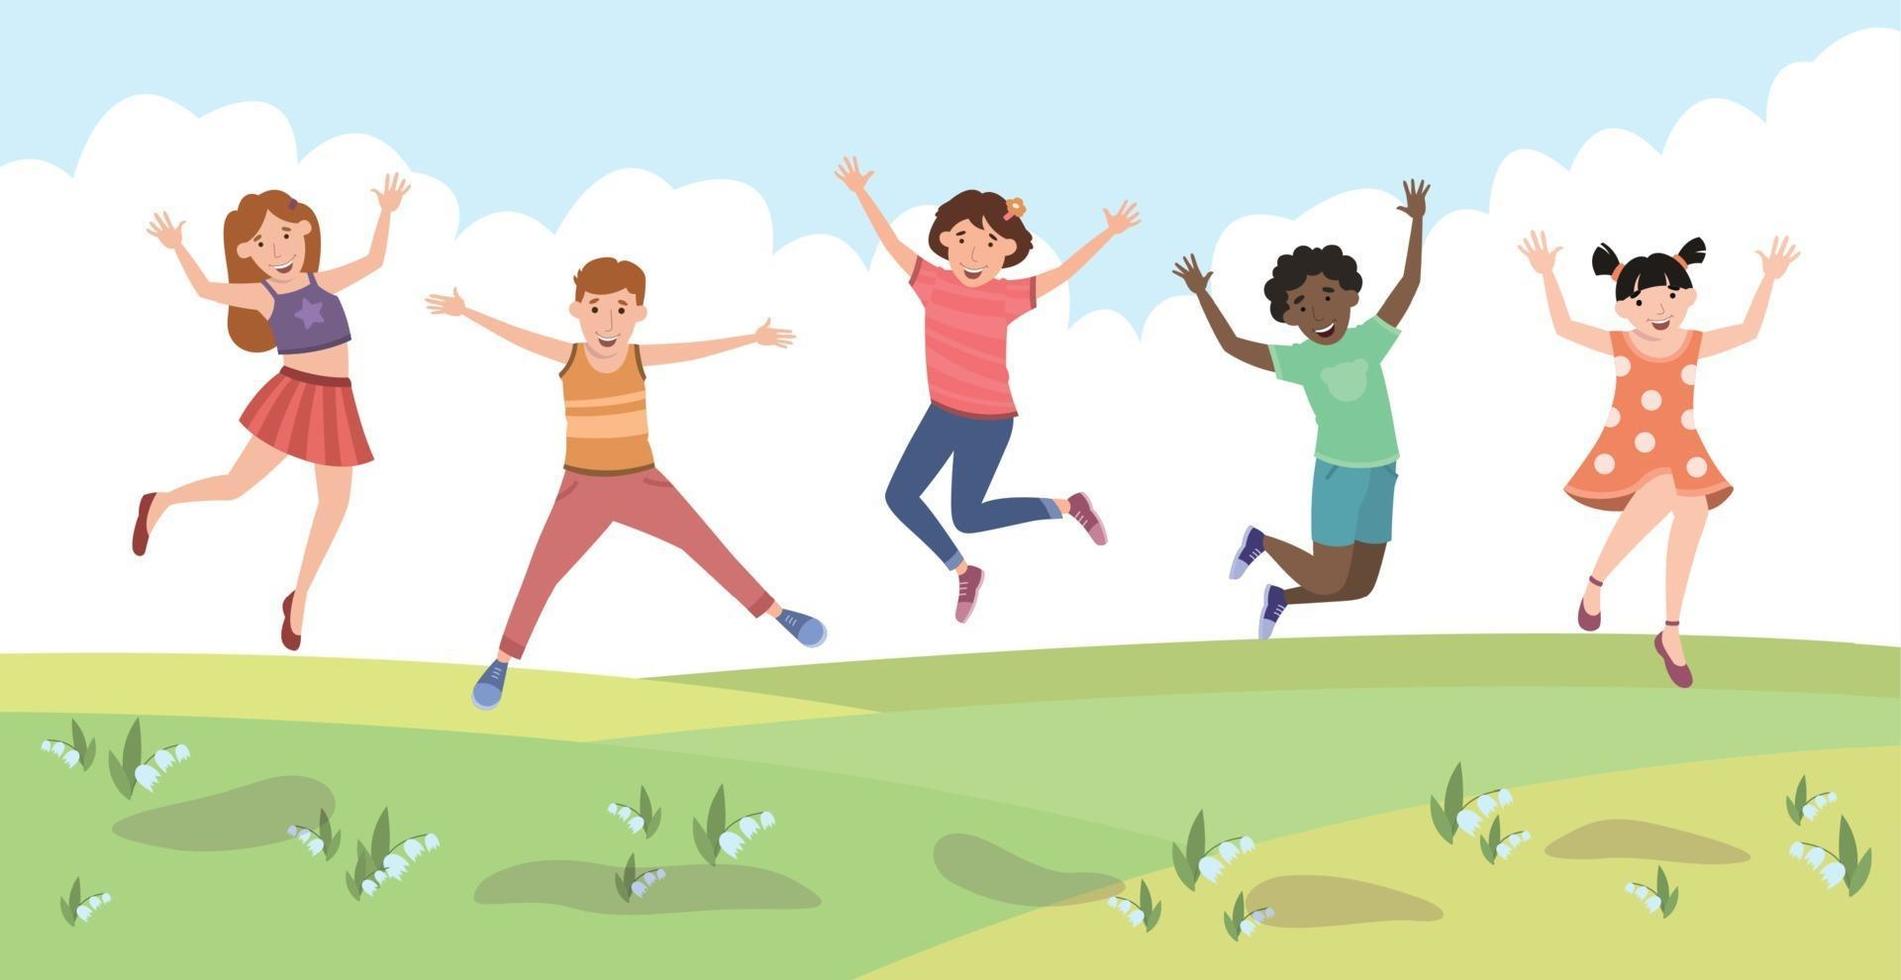 vijf gelukkige kinderen springen van vreugde op een groen gazon - vector